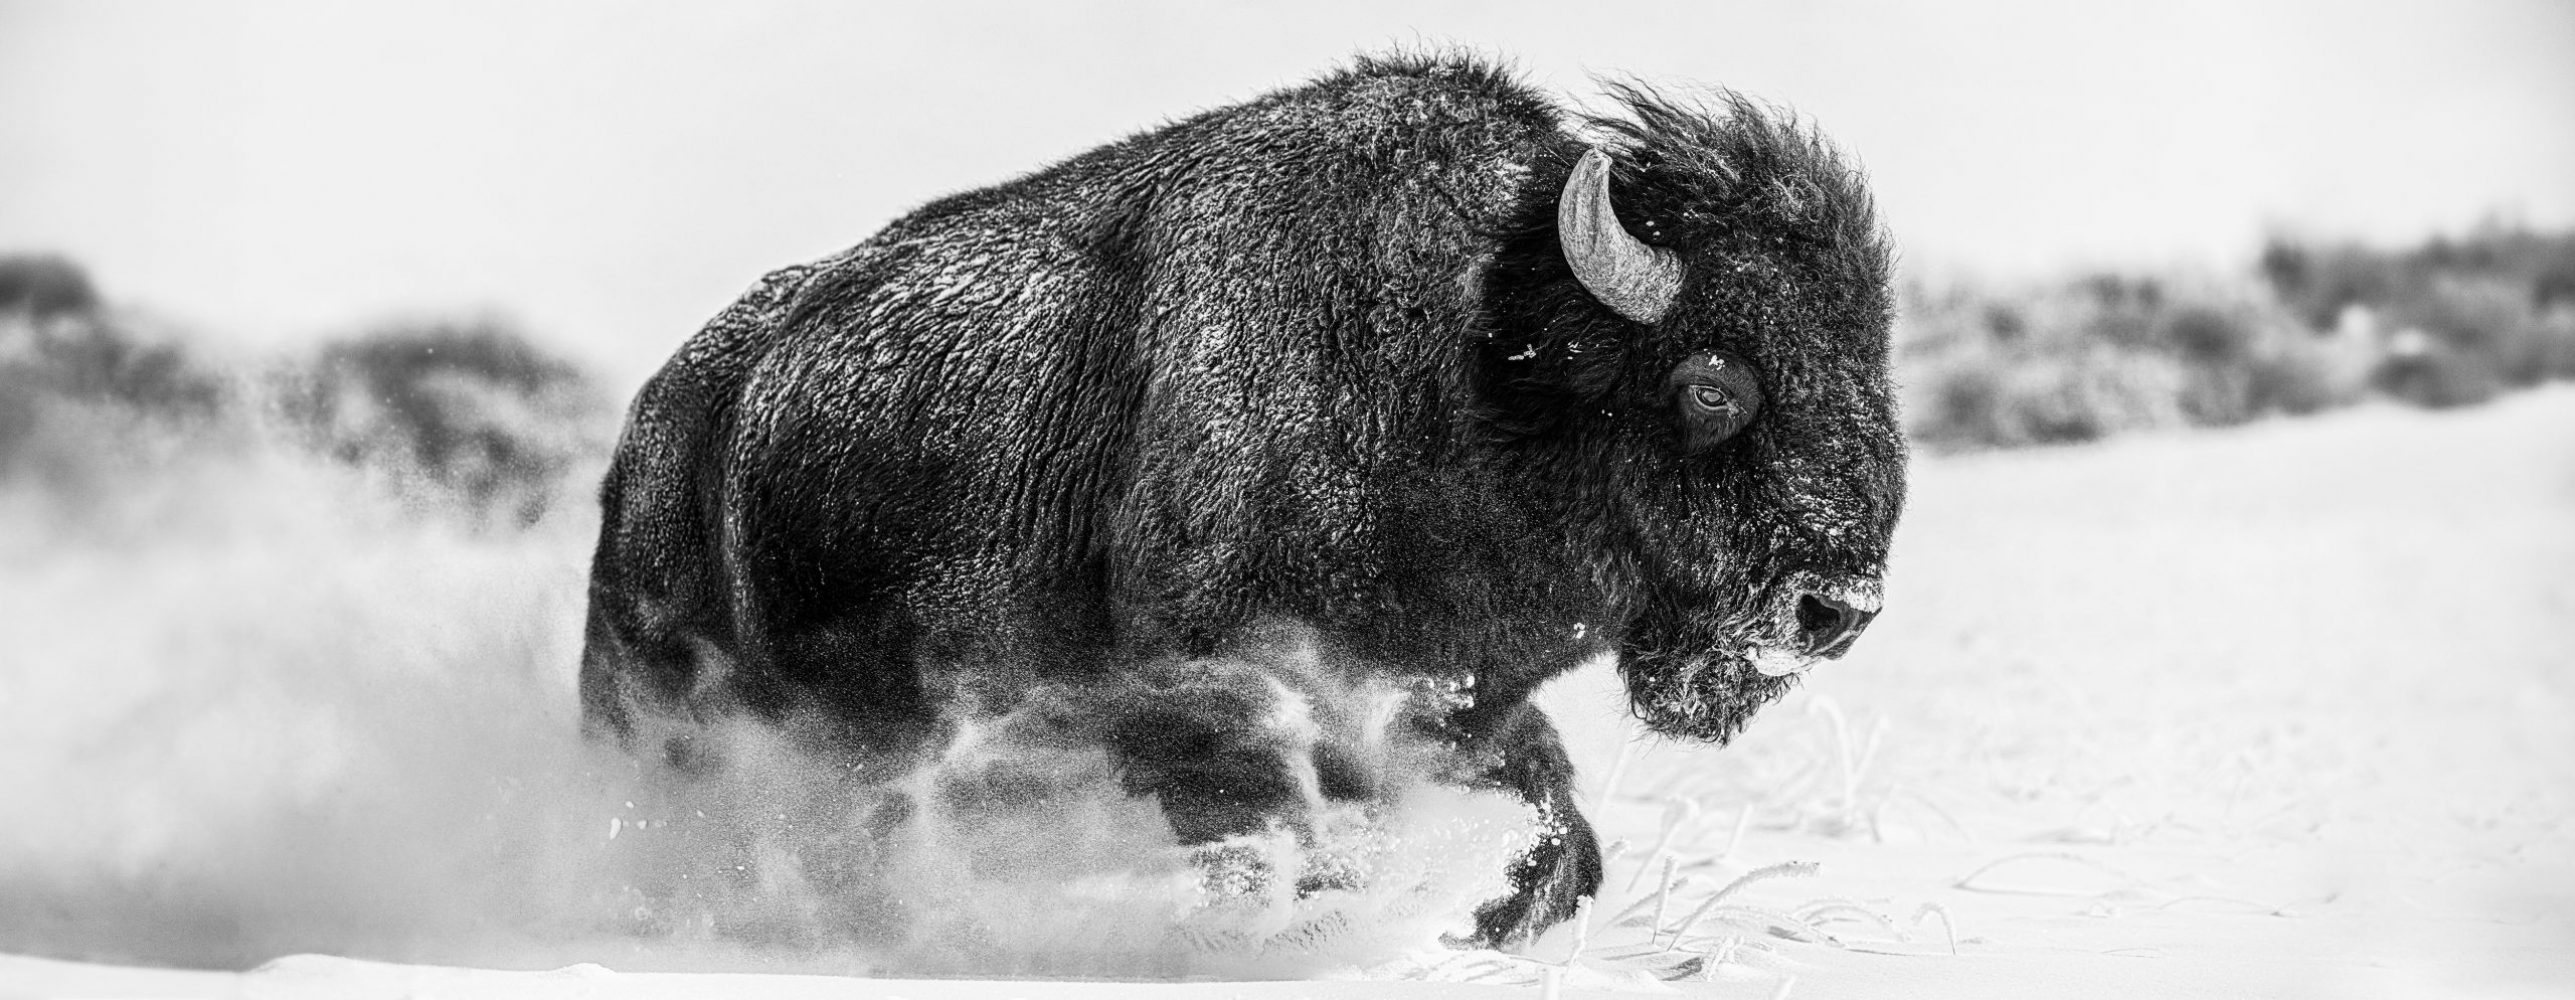 bison-in-snow_v2c